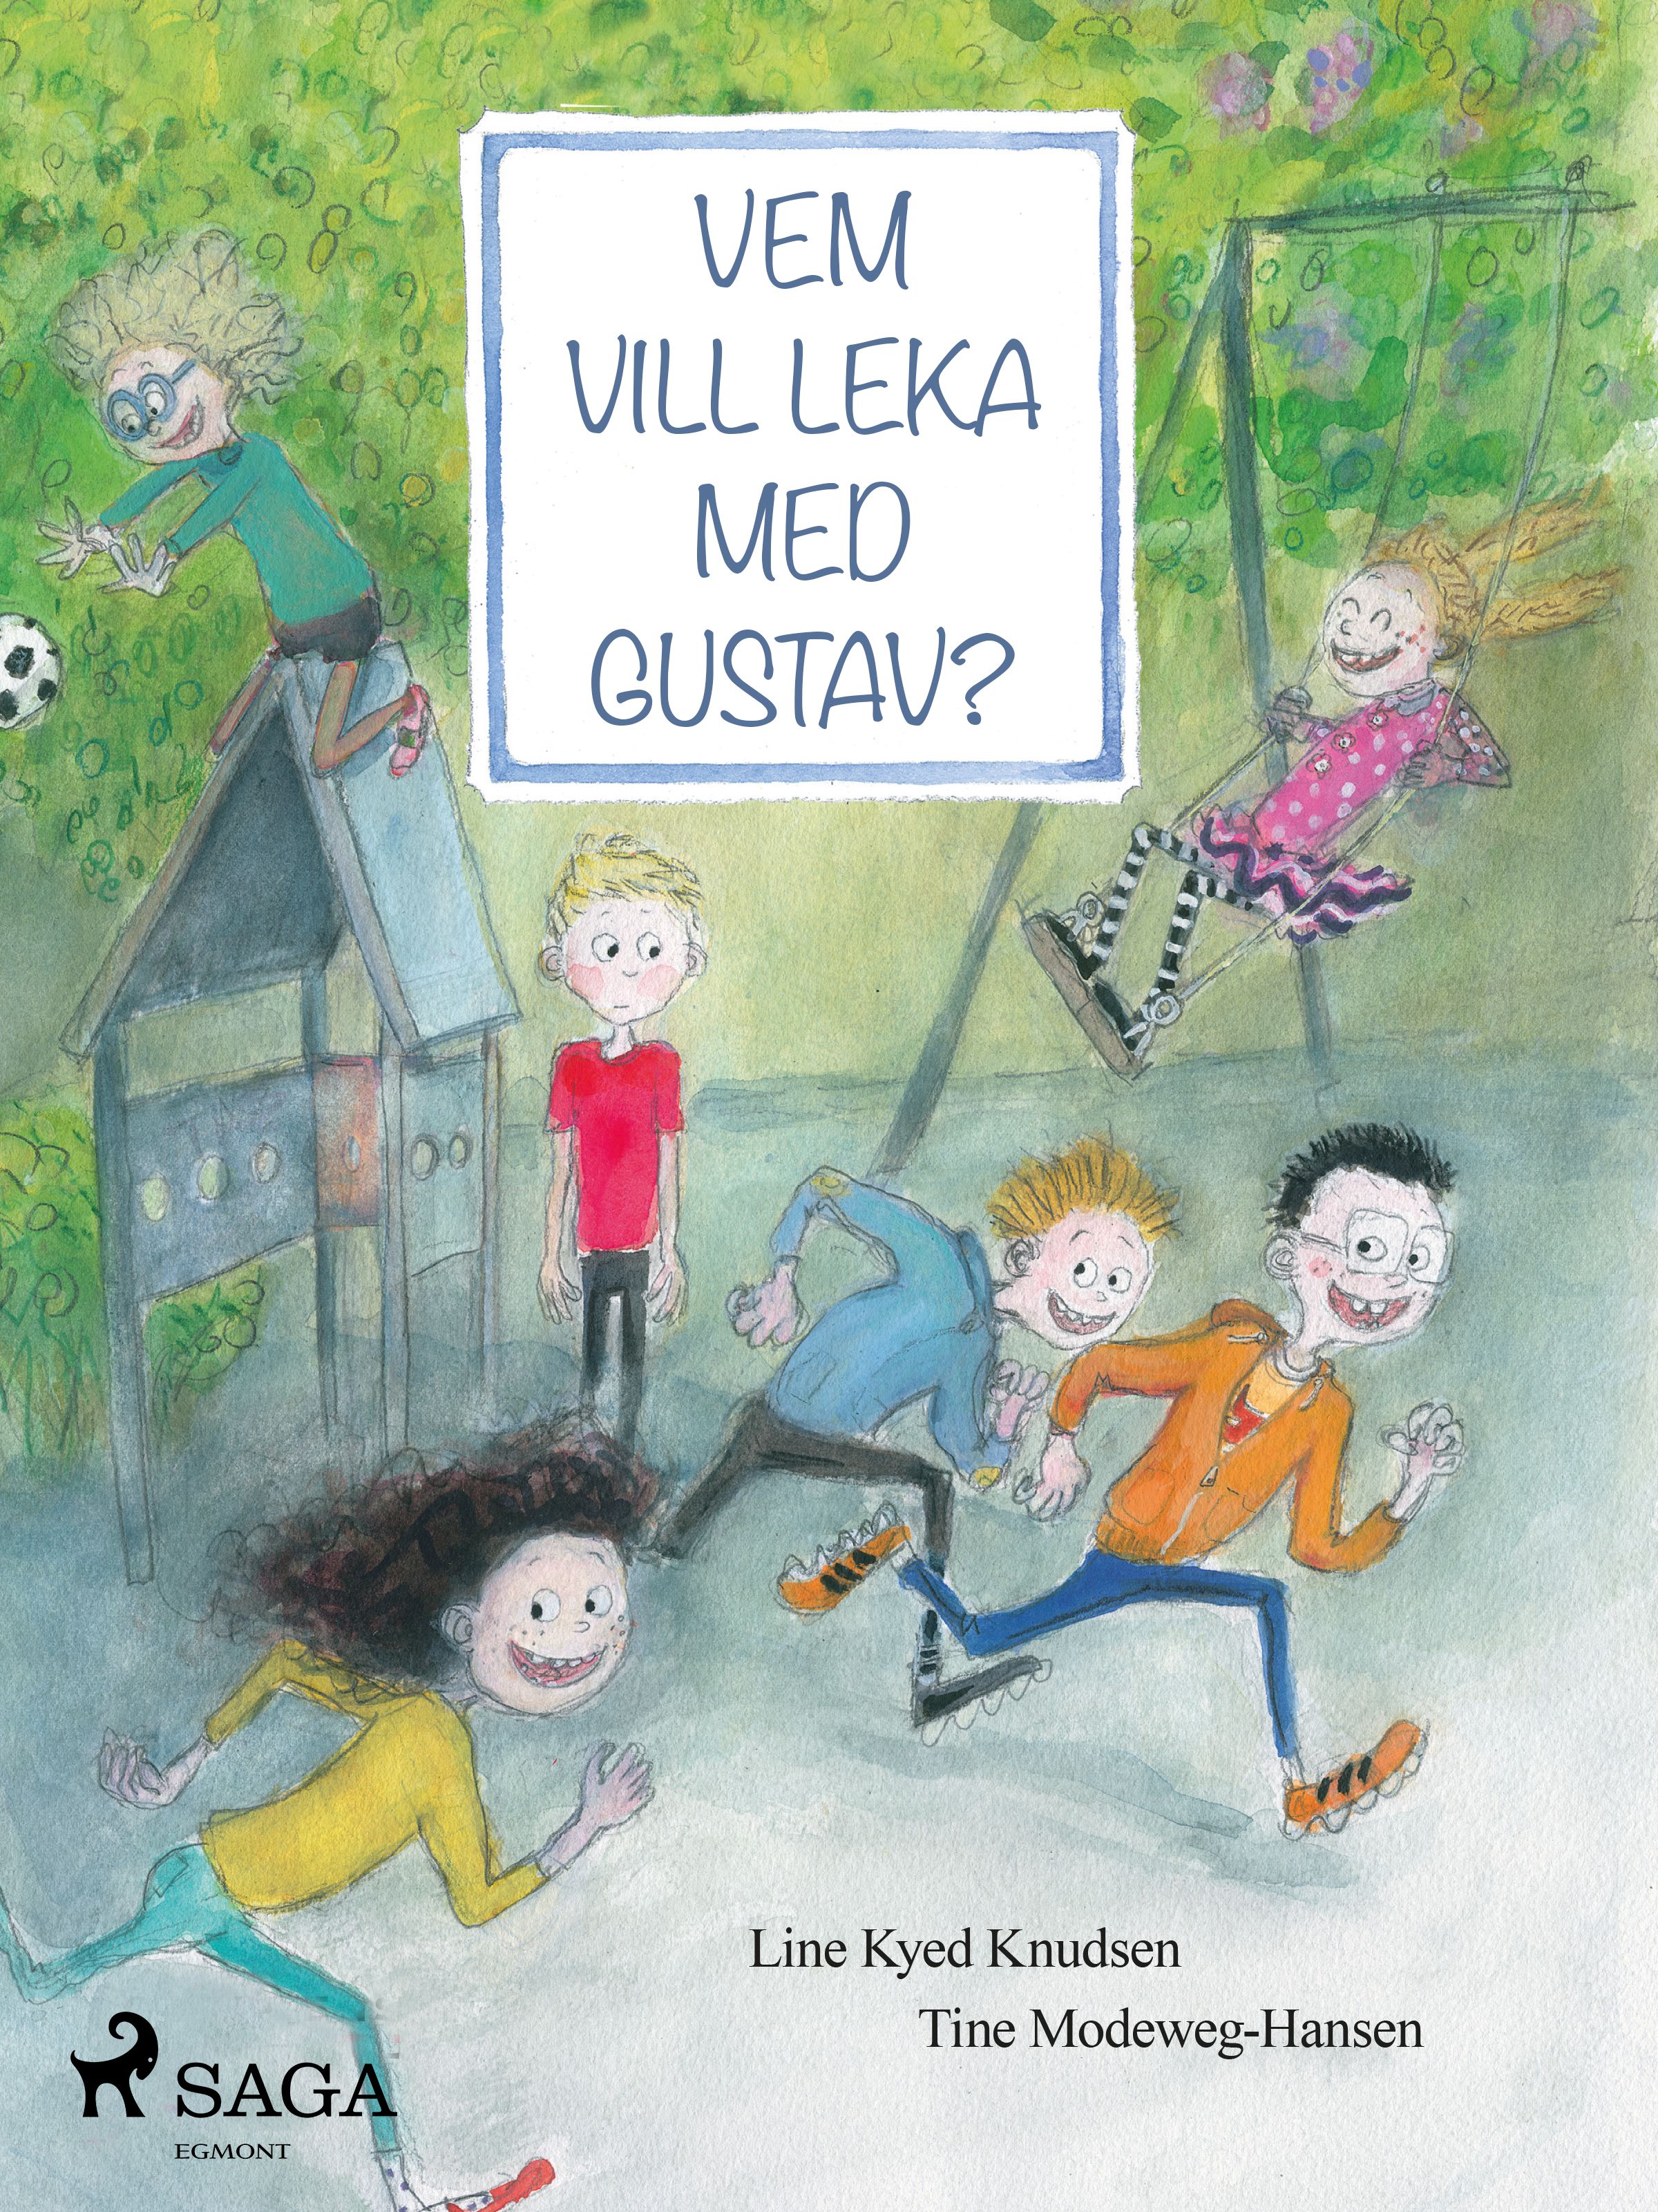 Vem vill leka med Gustav?, e-bog af Line Kyed Knudsen